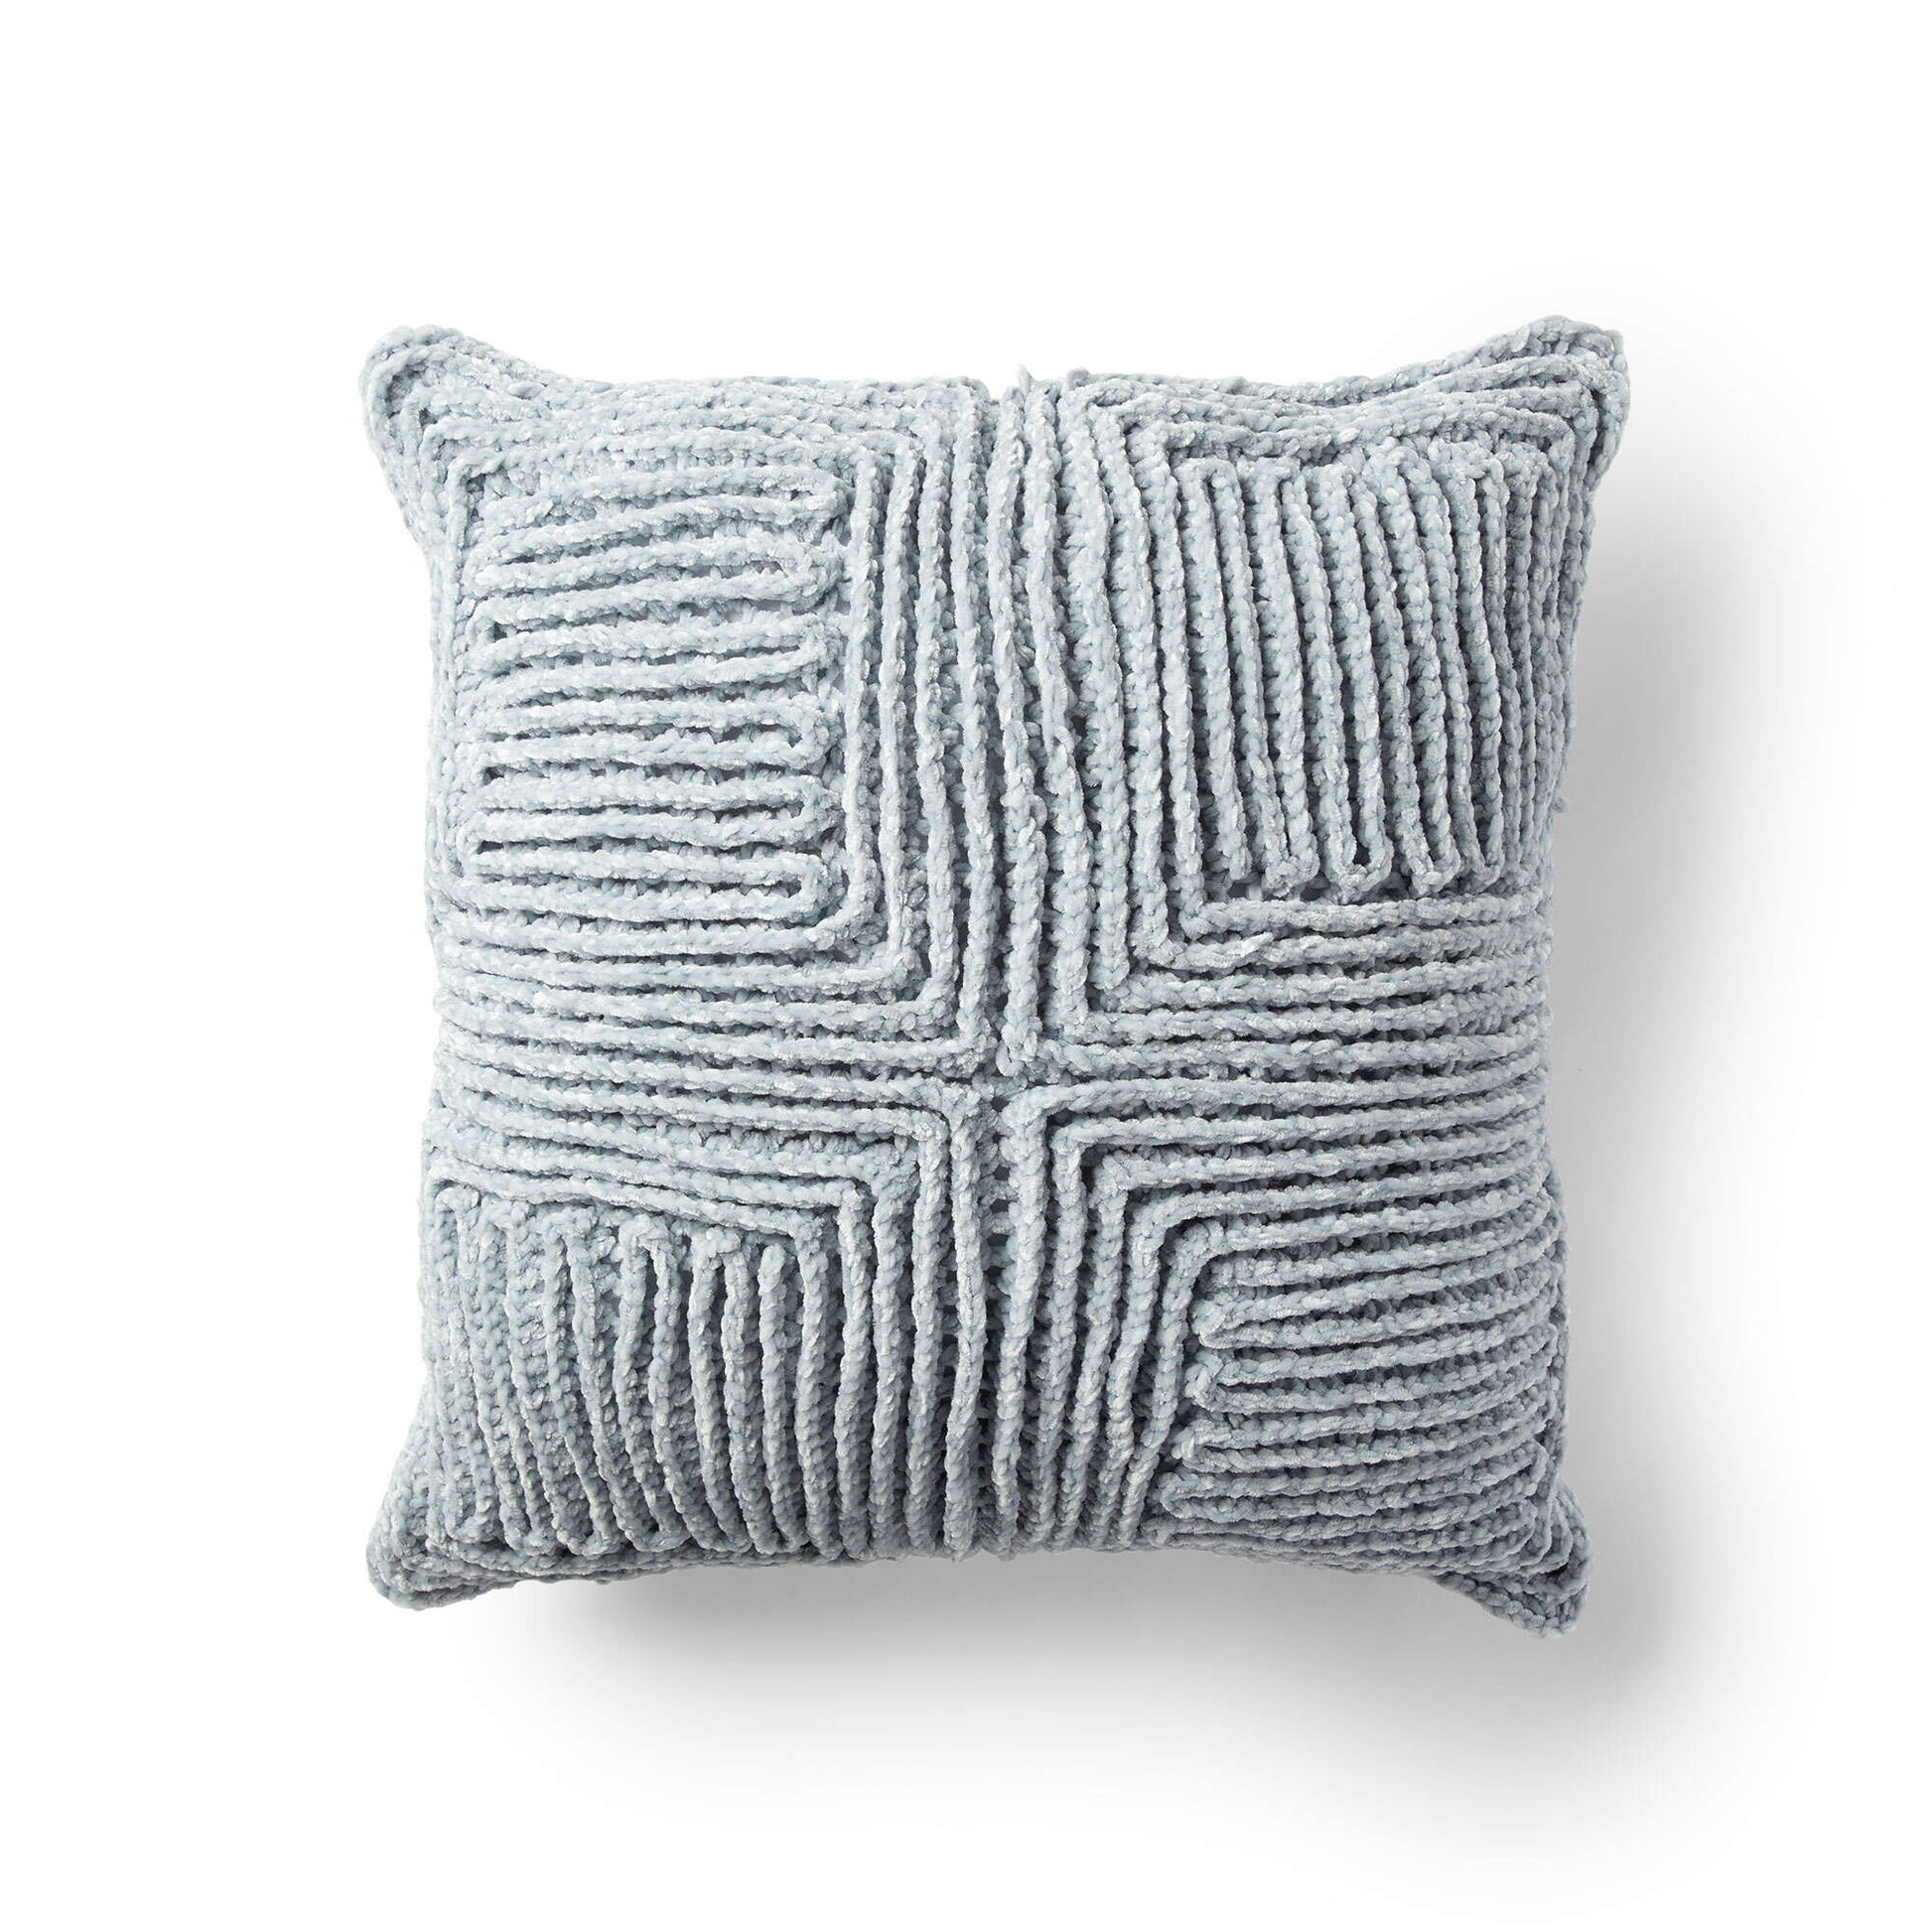 Free Bernat Swirling Textures Crochet Pillow Pattern